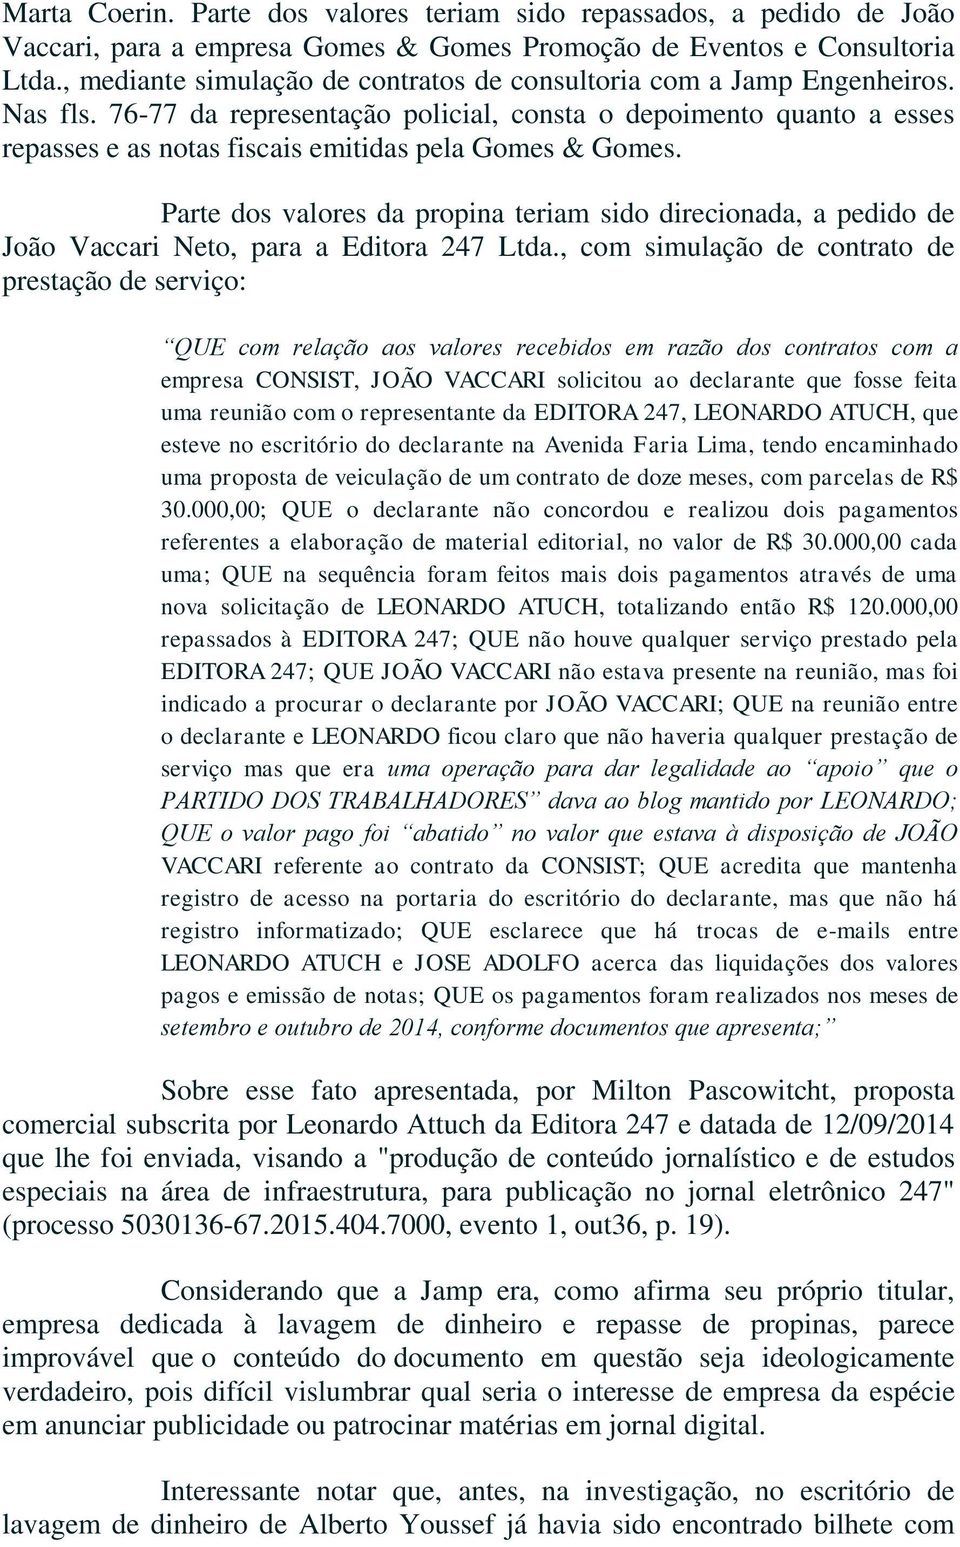 76-77 da representação policial, consta o depoimento quanto a esses repasses e as notas fiscais emitidas pela Gomes & Gomes.